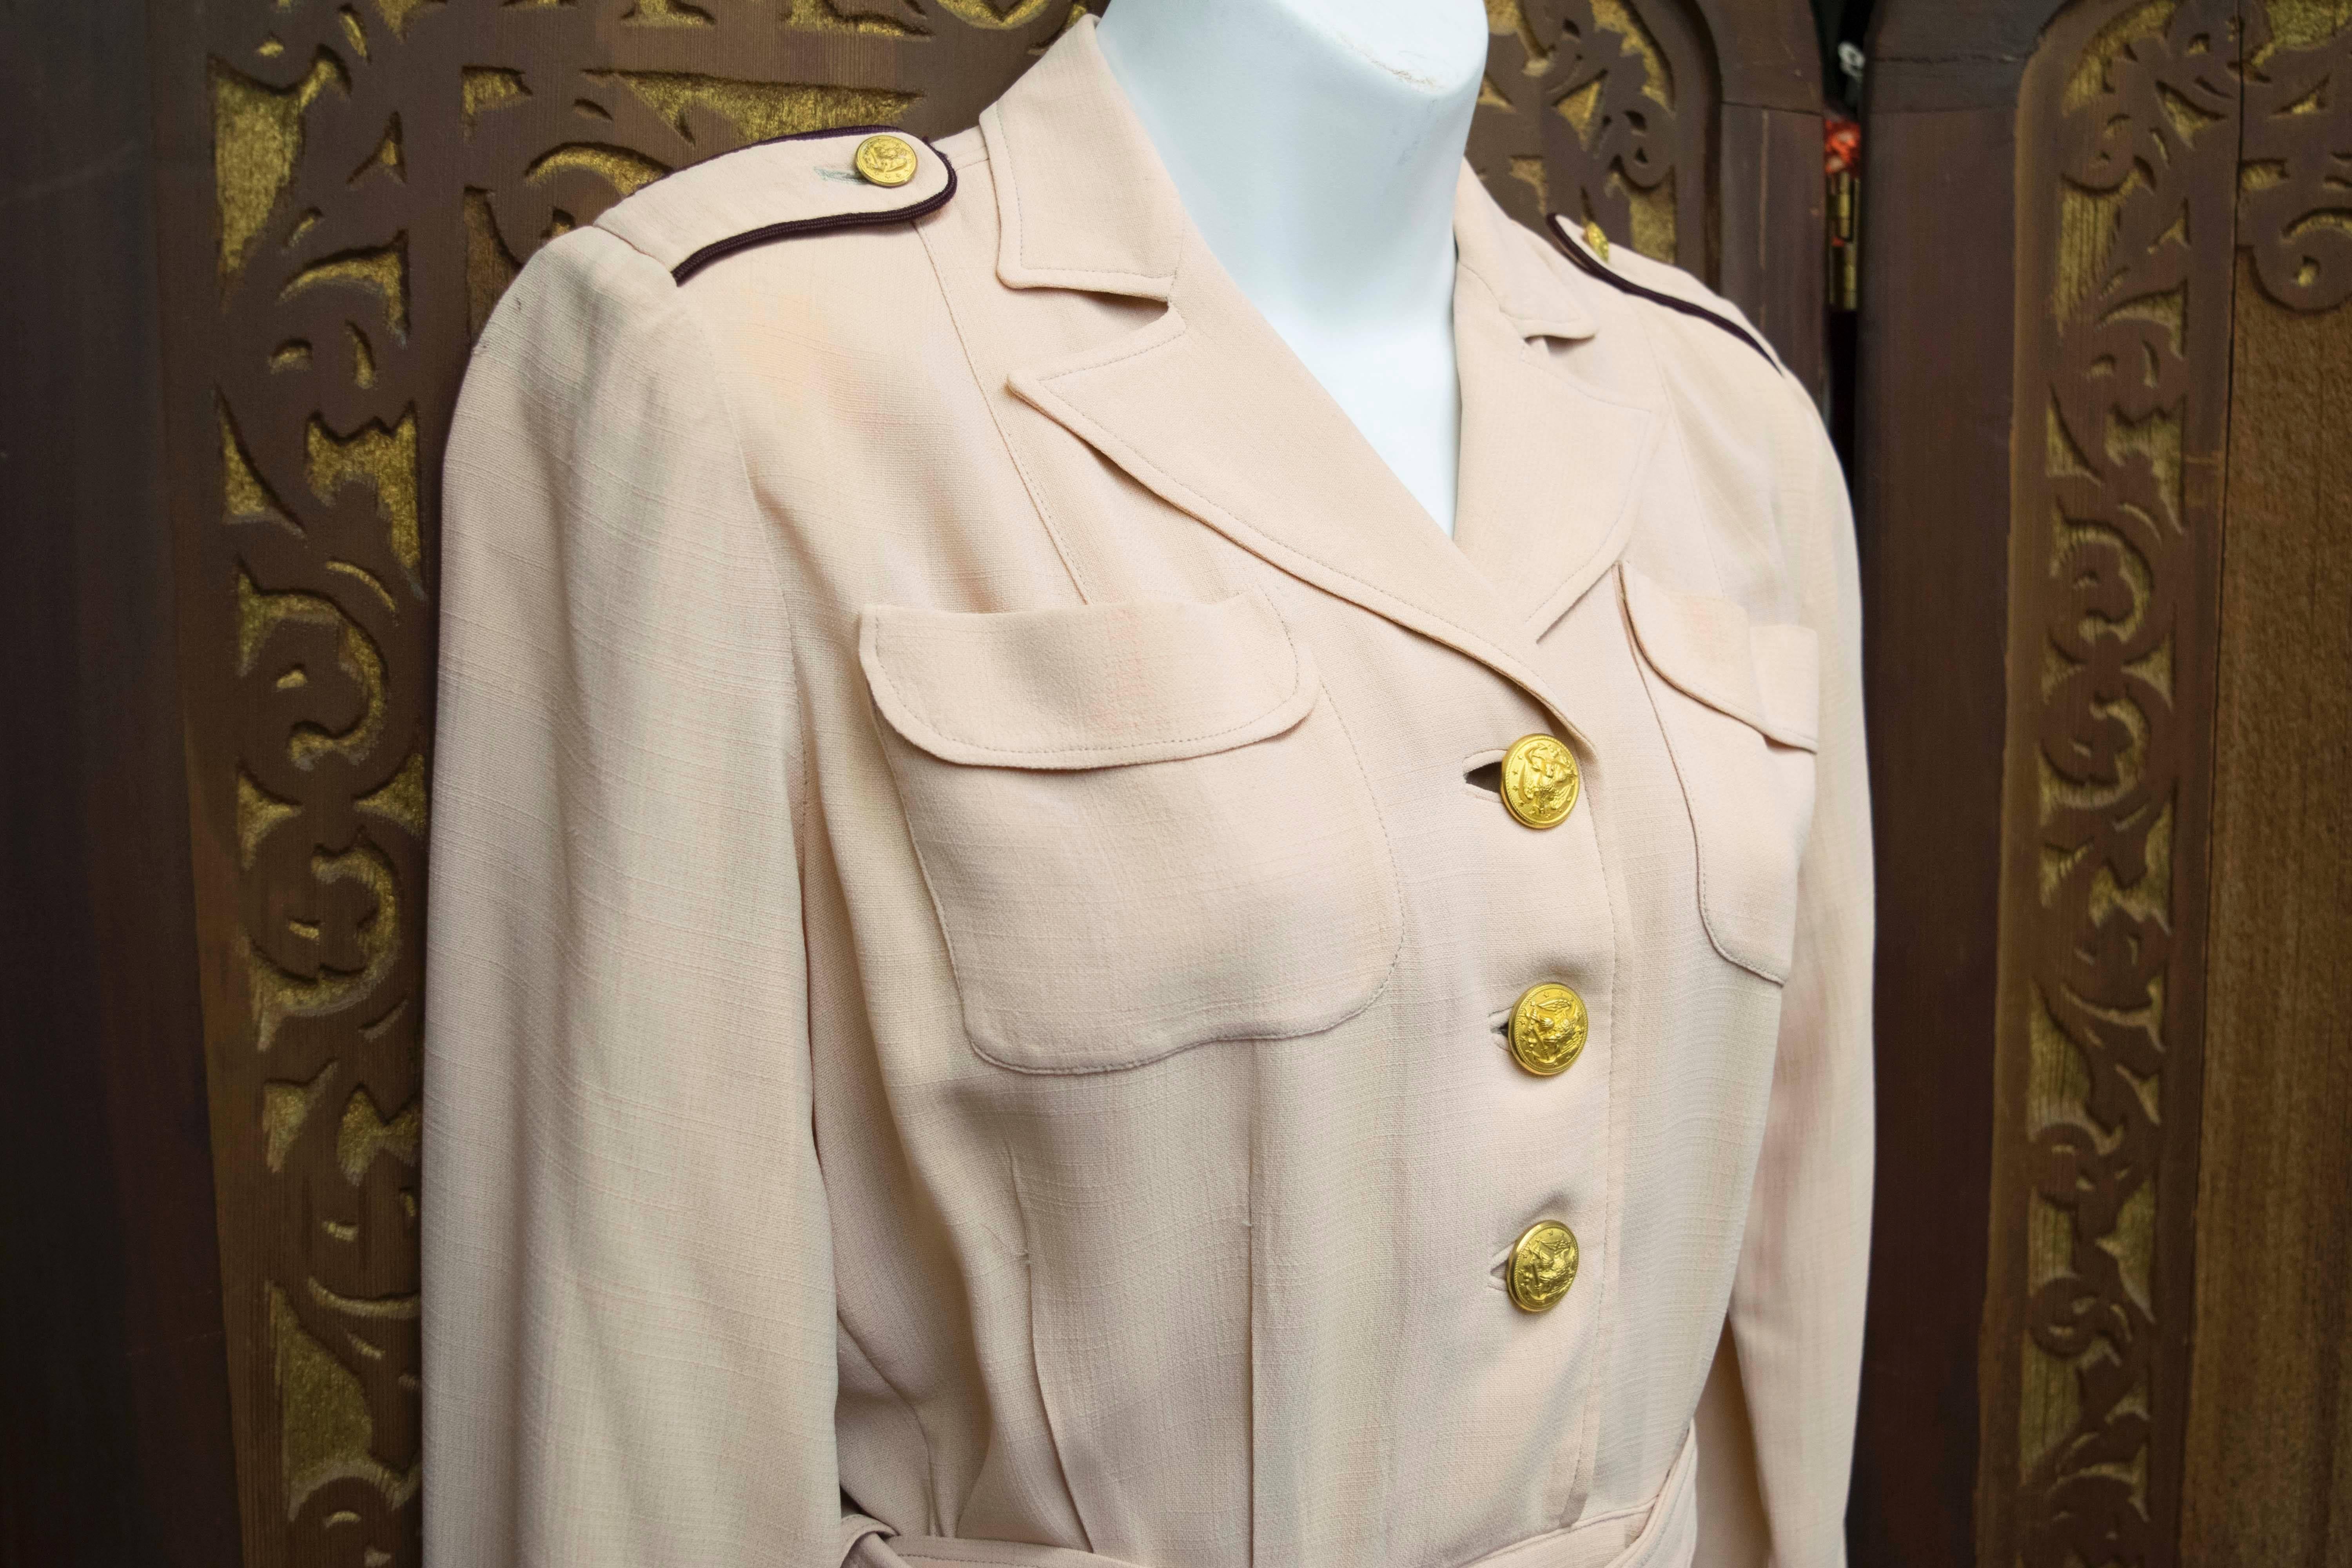 1940s nurse outfit